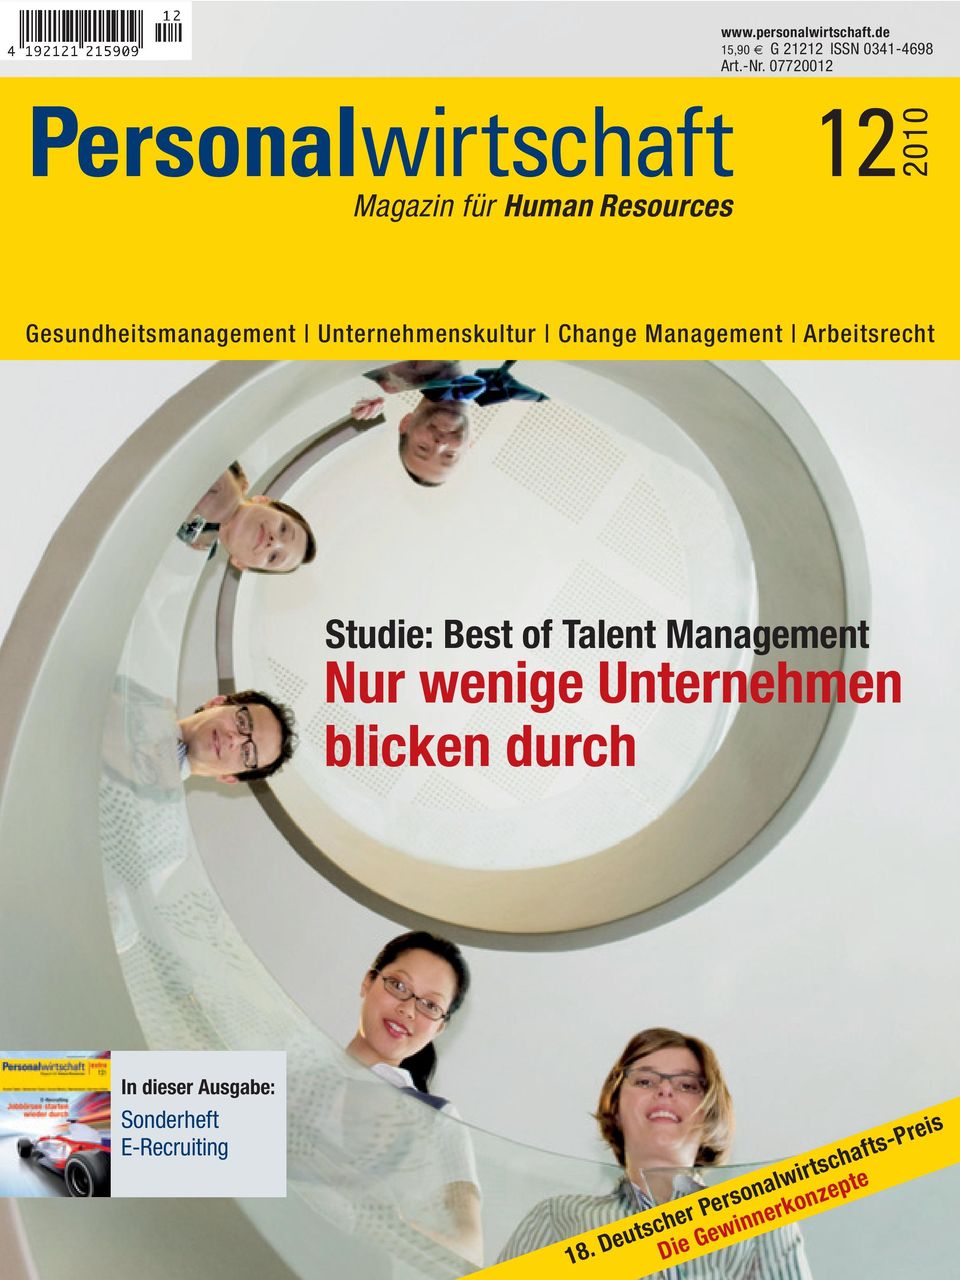 Unternehmenskultur Change Management Arbeitsrecht Studie: Best of Talent Management Nur